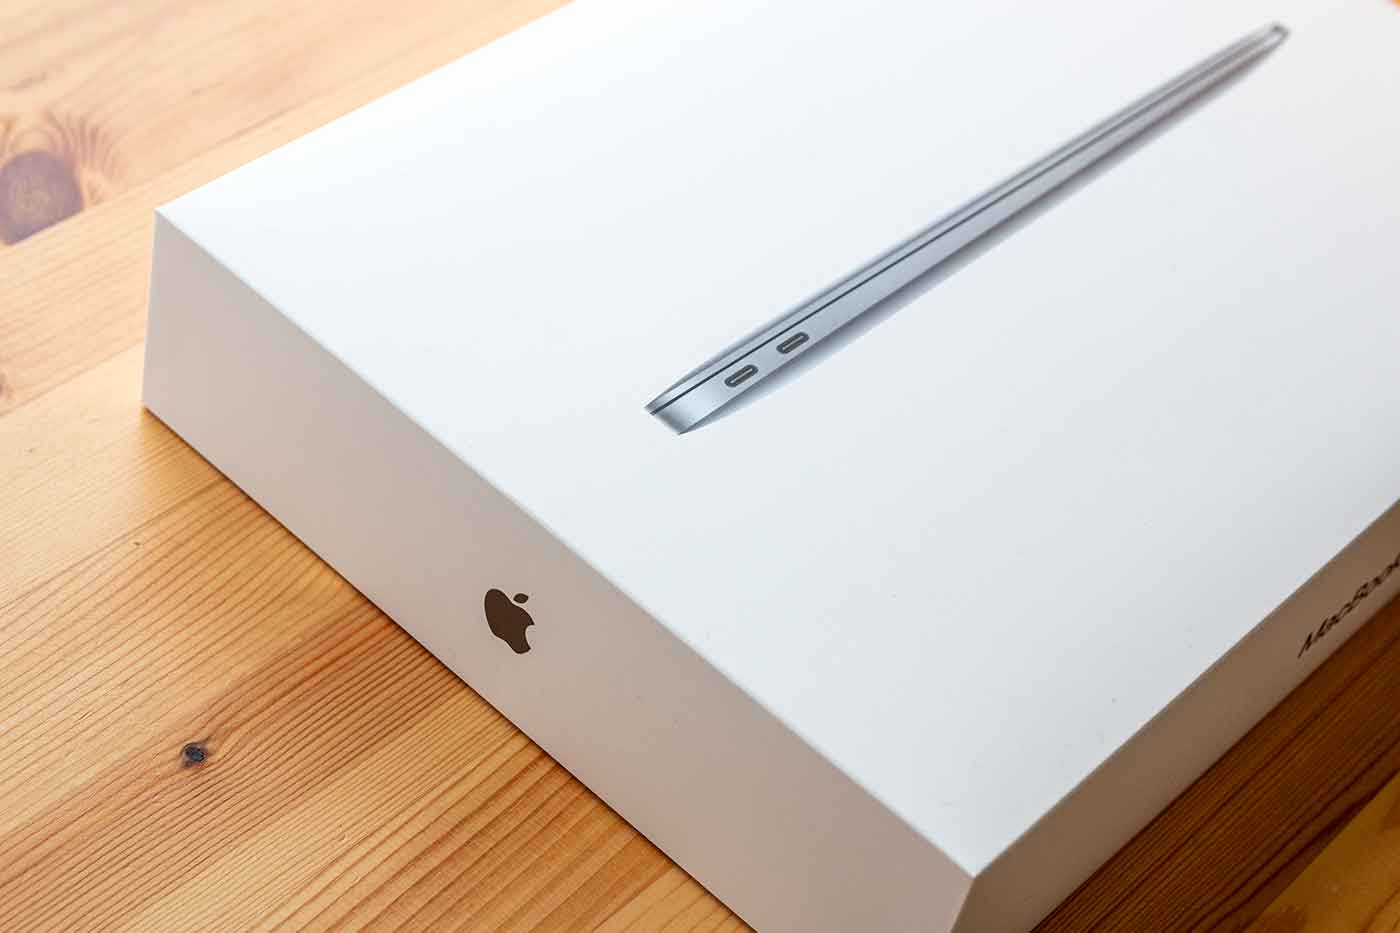 MacBook Airの箱